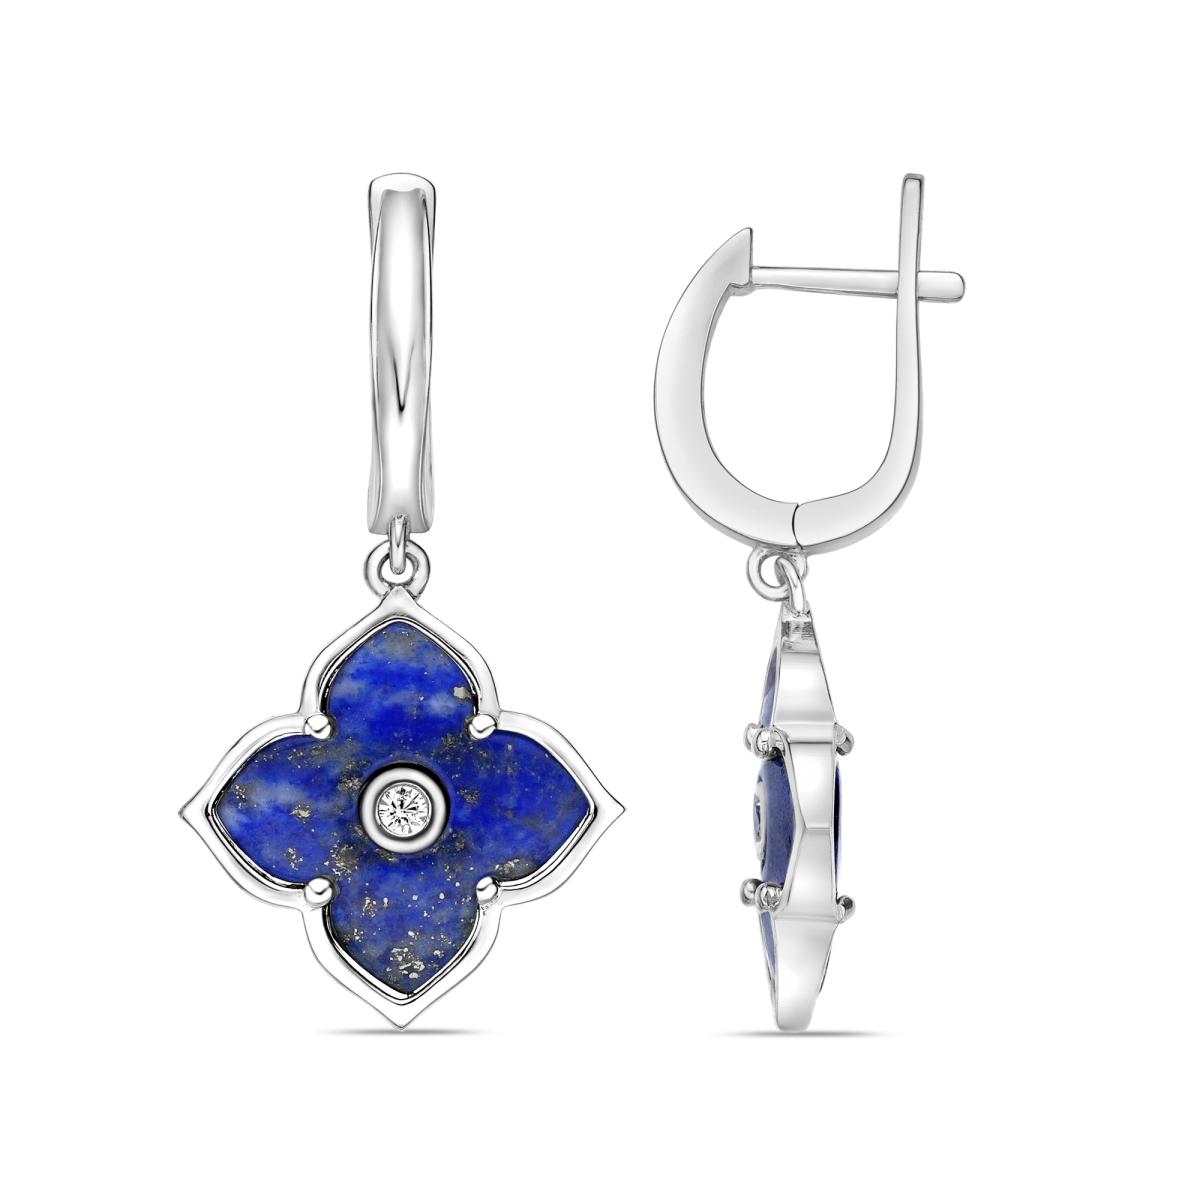 50777-earrings-fashion-jewelry-sterling-silver-